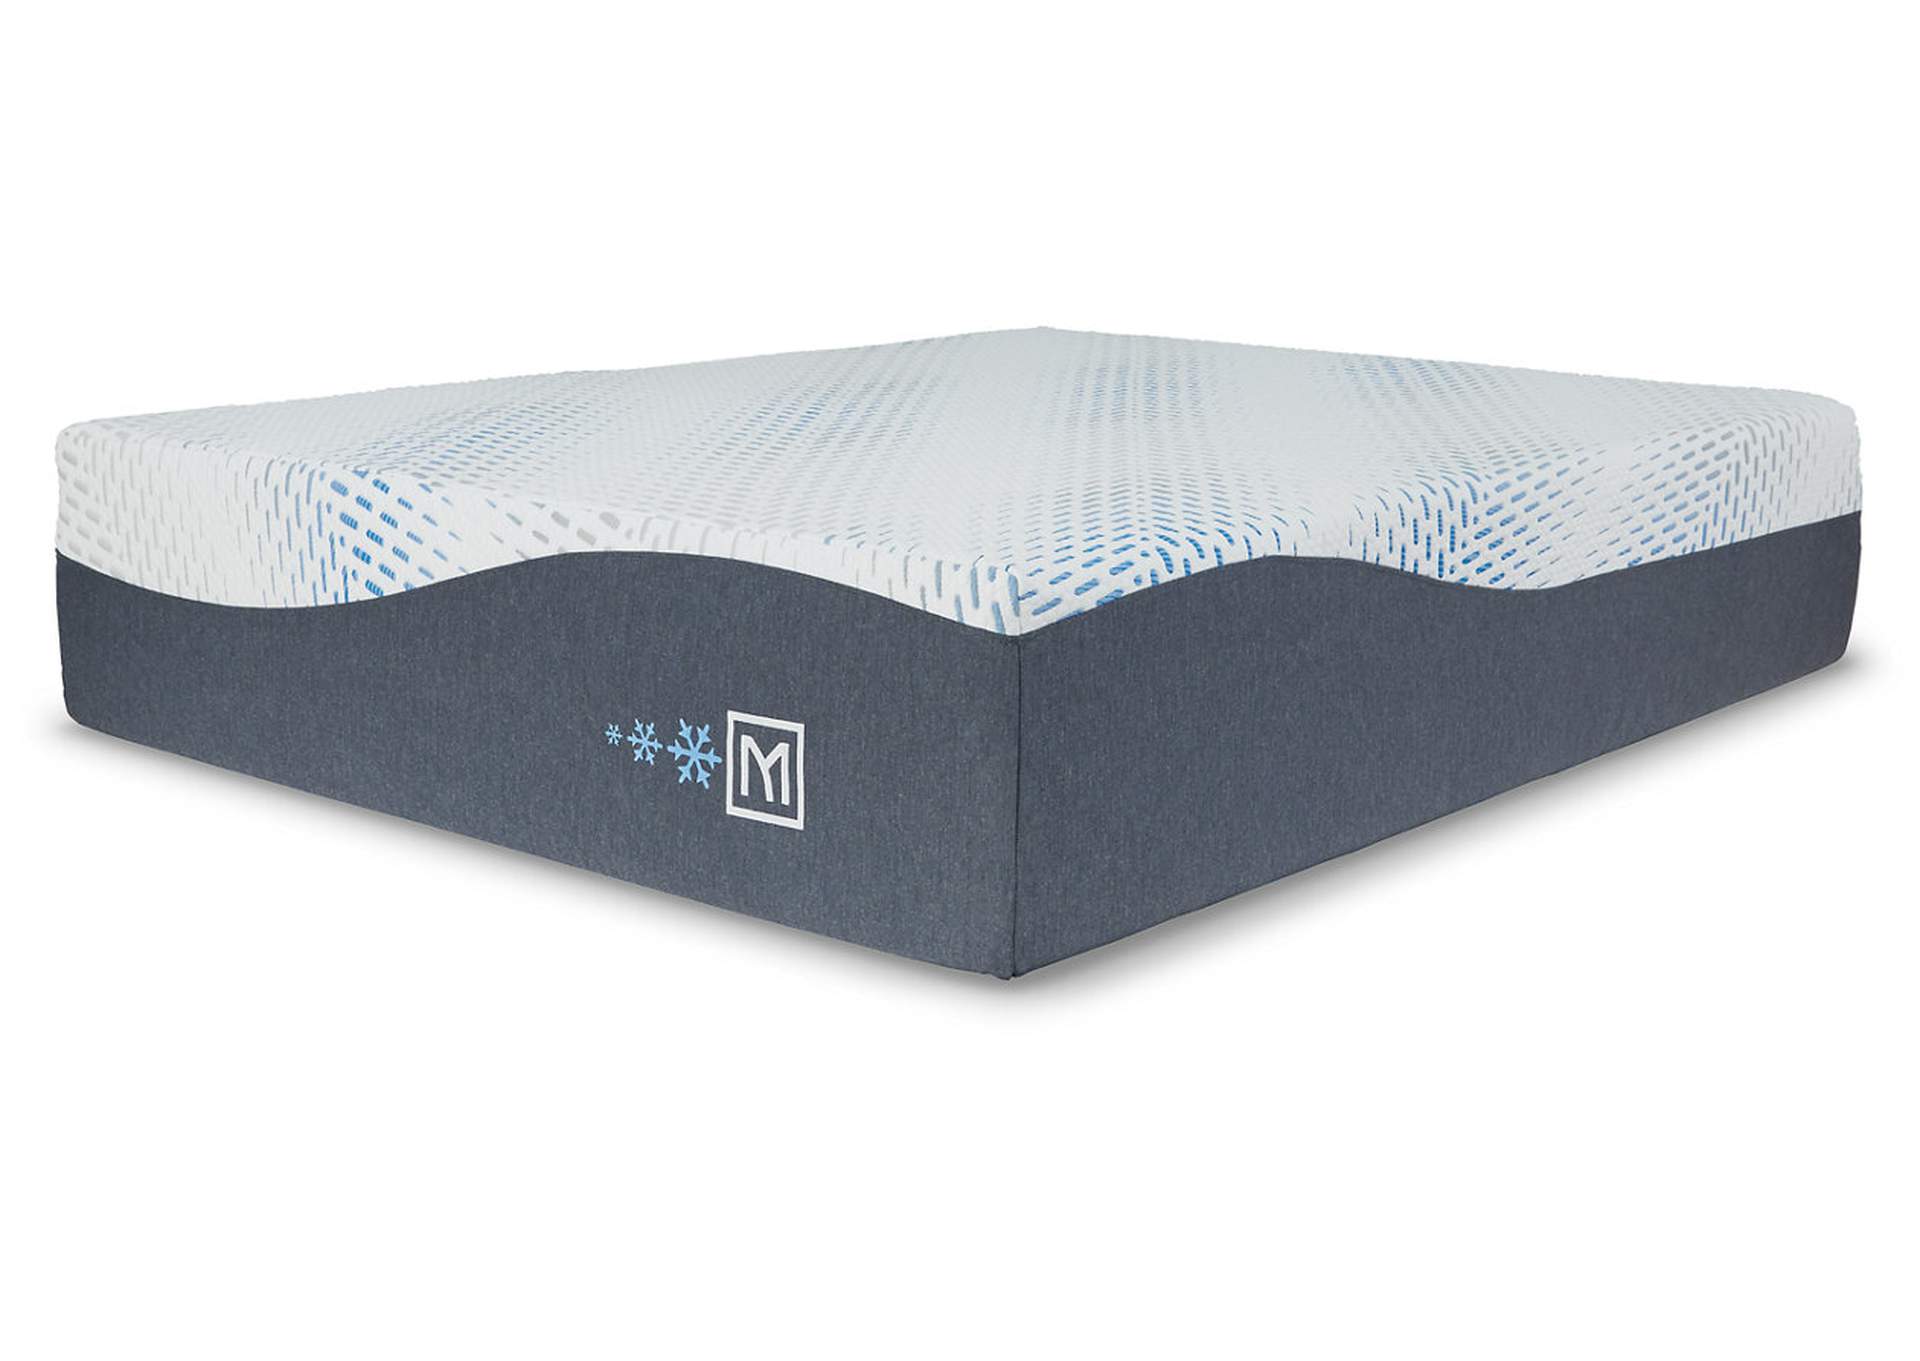 Millennium Luxury Gel Latex and Memory Foam Twin XL Mattress,Sierra Sleep by Ashley